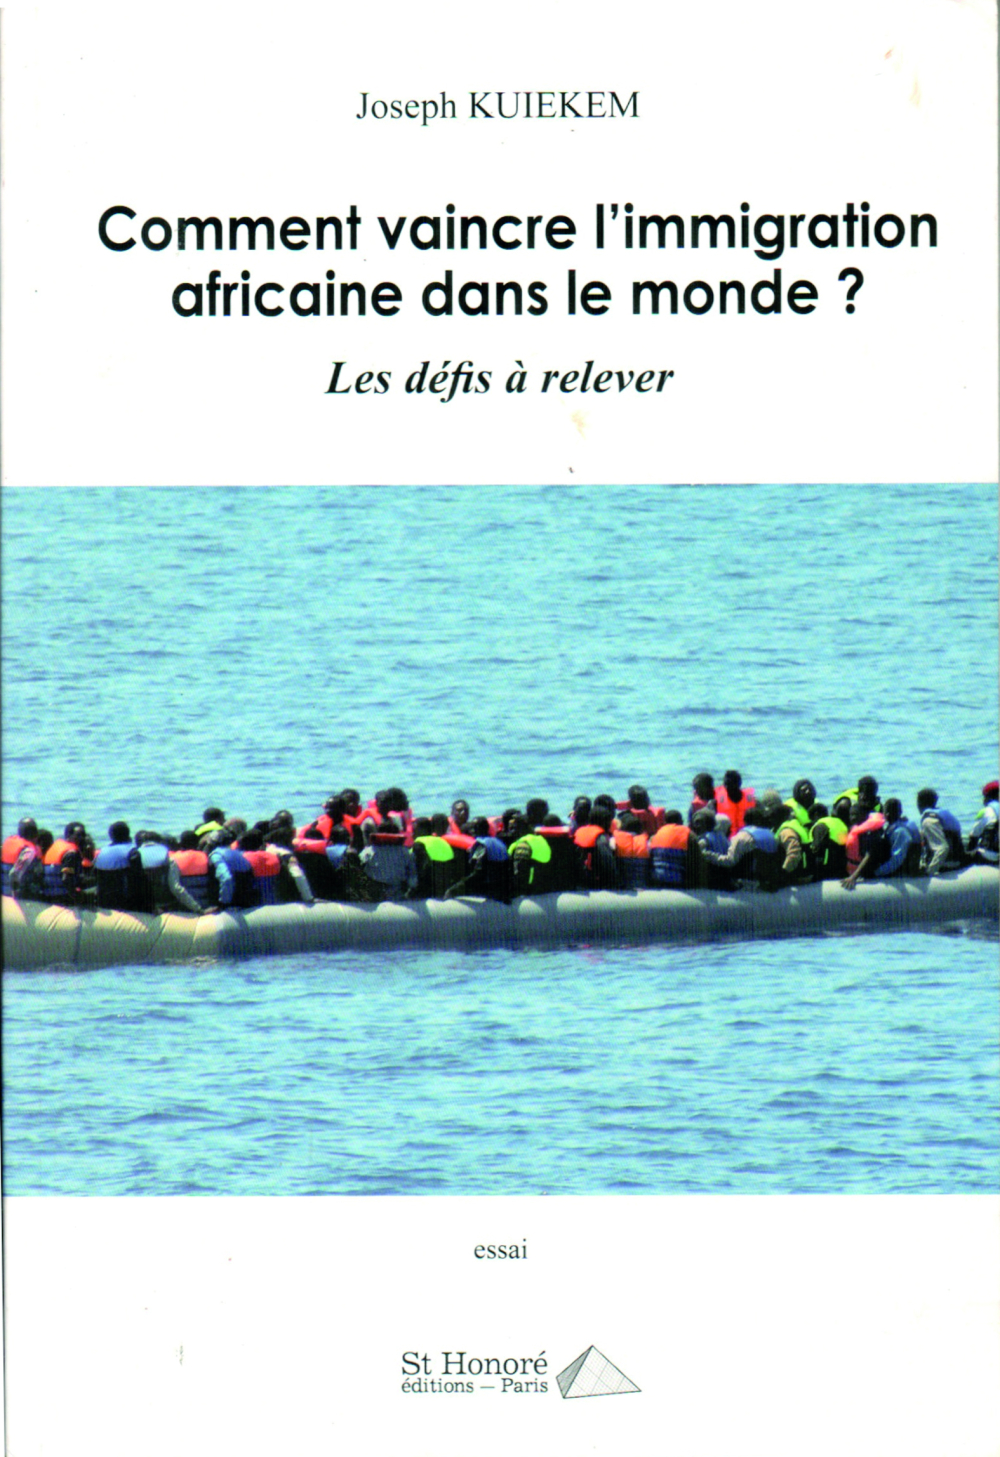 « Comment vaincre l’immigration africaine dans le monde ? Les défis à relever », Joseph Kuiekem, Editions Saint Honoré, janvier 2022, 190 pages.